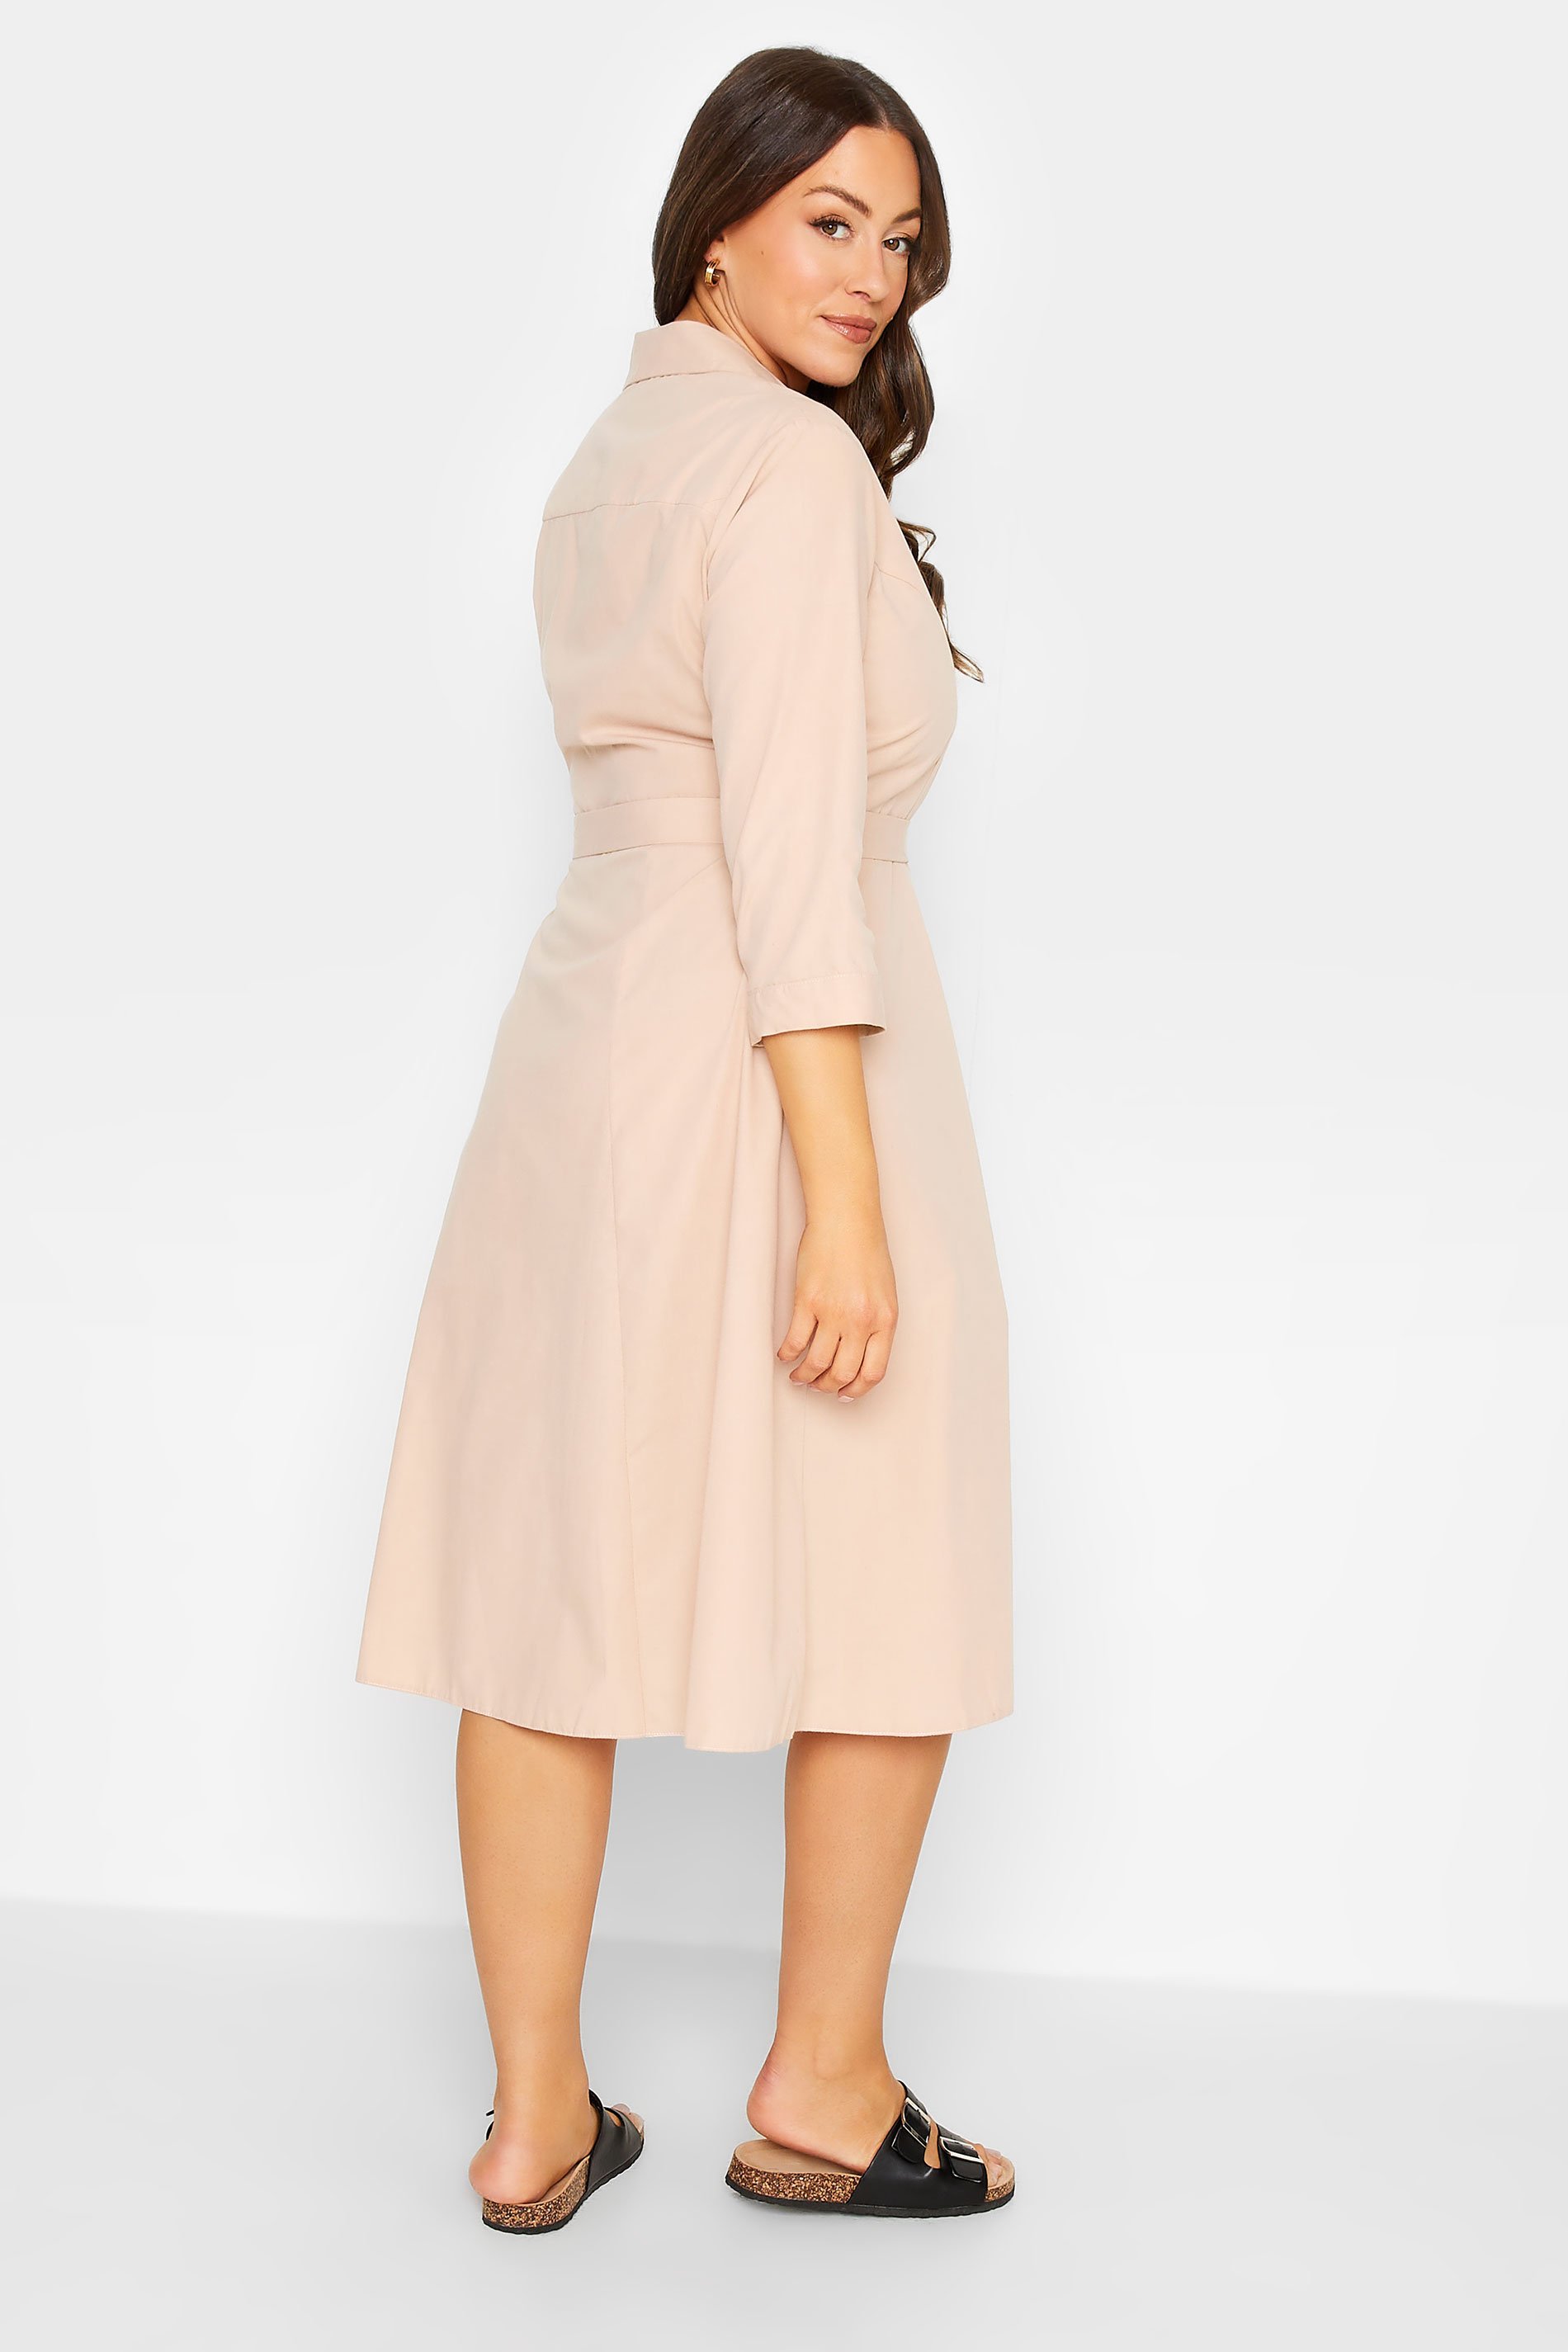 M&Co Pink Tie Waist Shirt Dress | M&Co 3